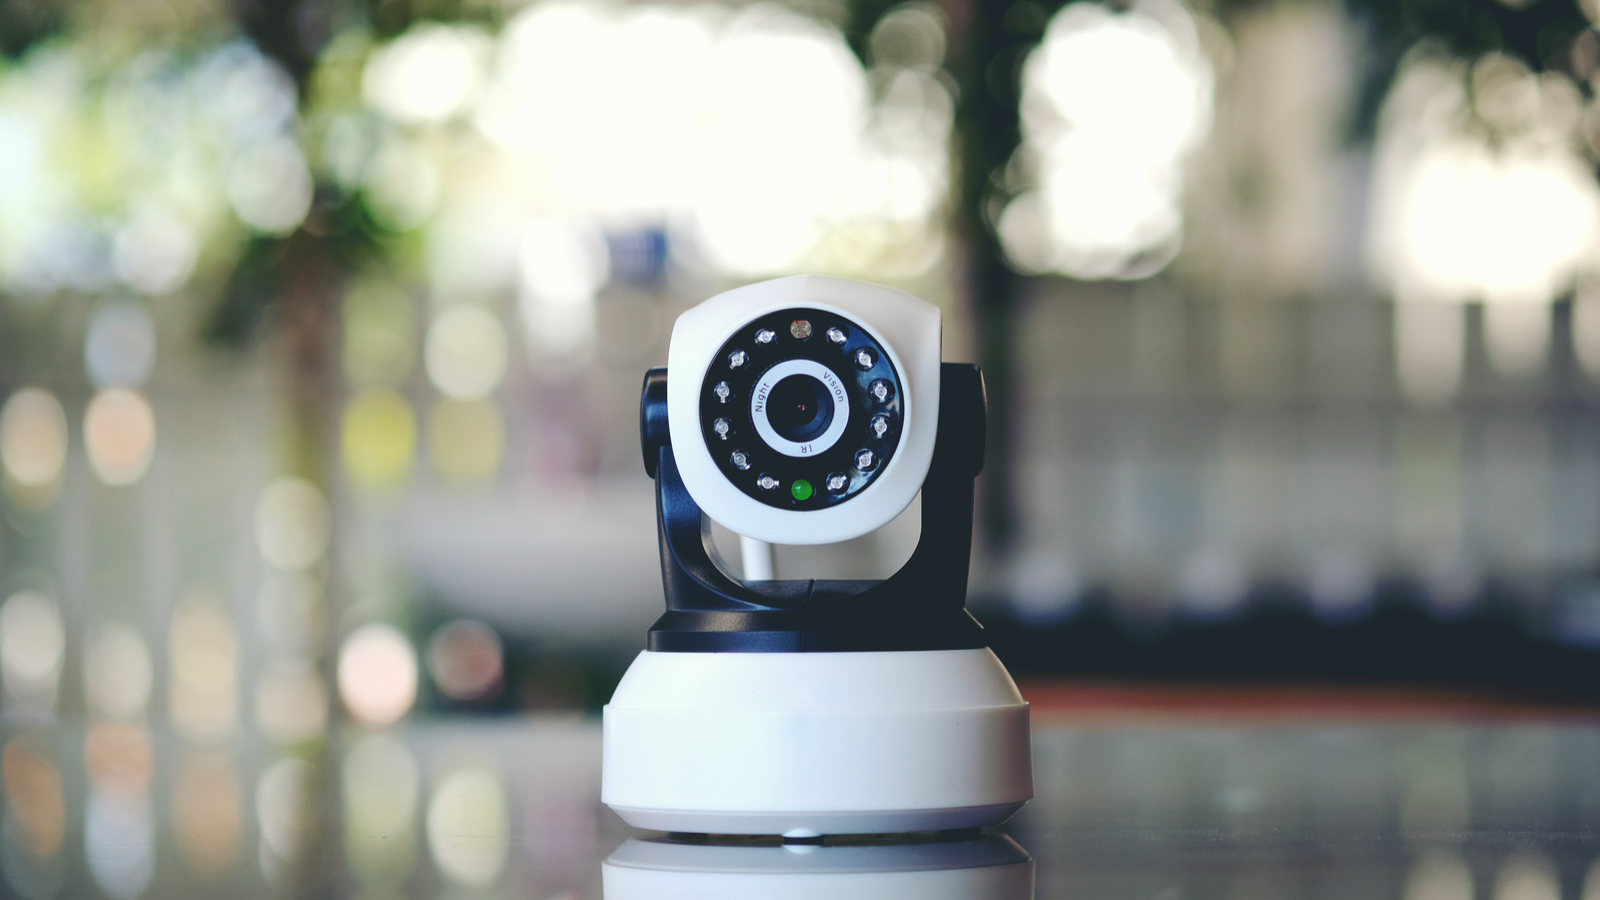 Caméras de surveillance extérieures Wifi : notre Top 10